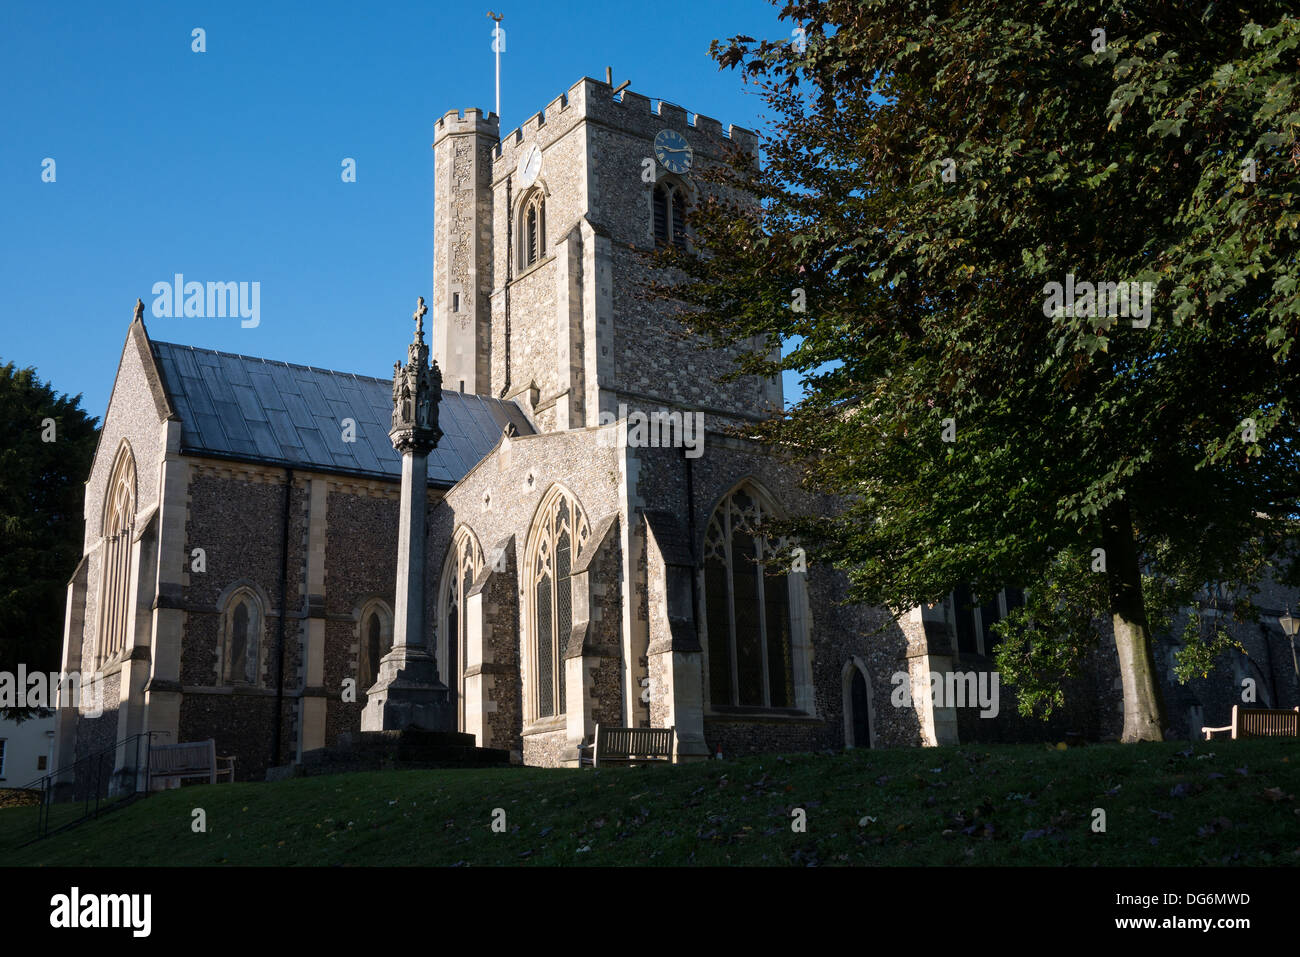 St.-Peters-Kirche und die Smith-Dorrien-Denkmal Berkhamsted, Hertfordshire UK Bildnachweis: David Levenson / Alamy Stockfoto